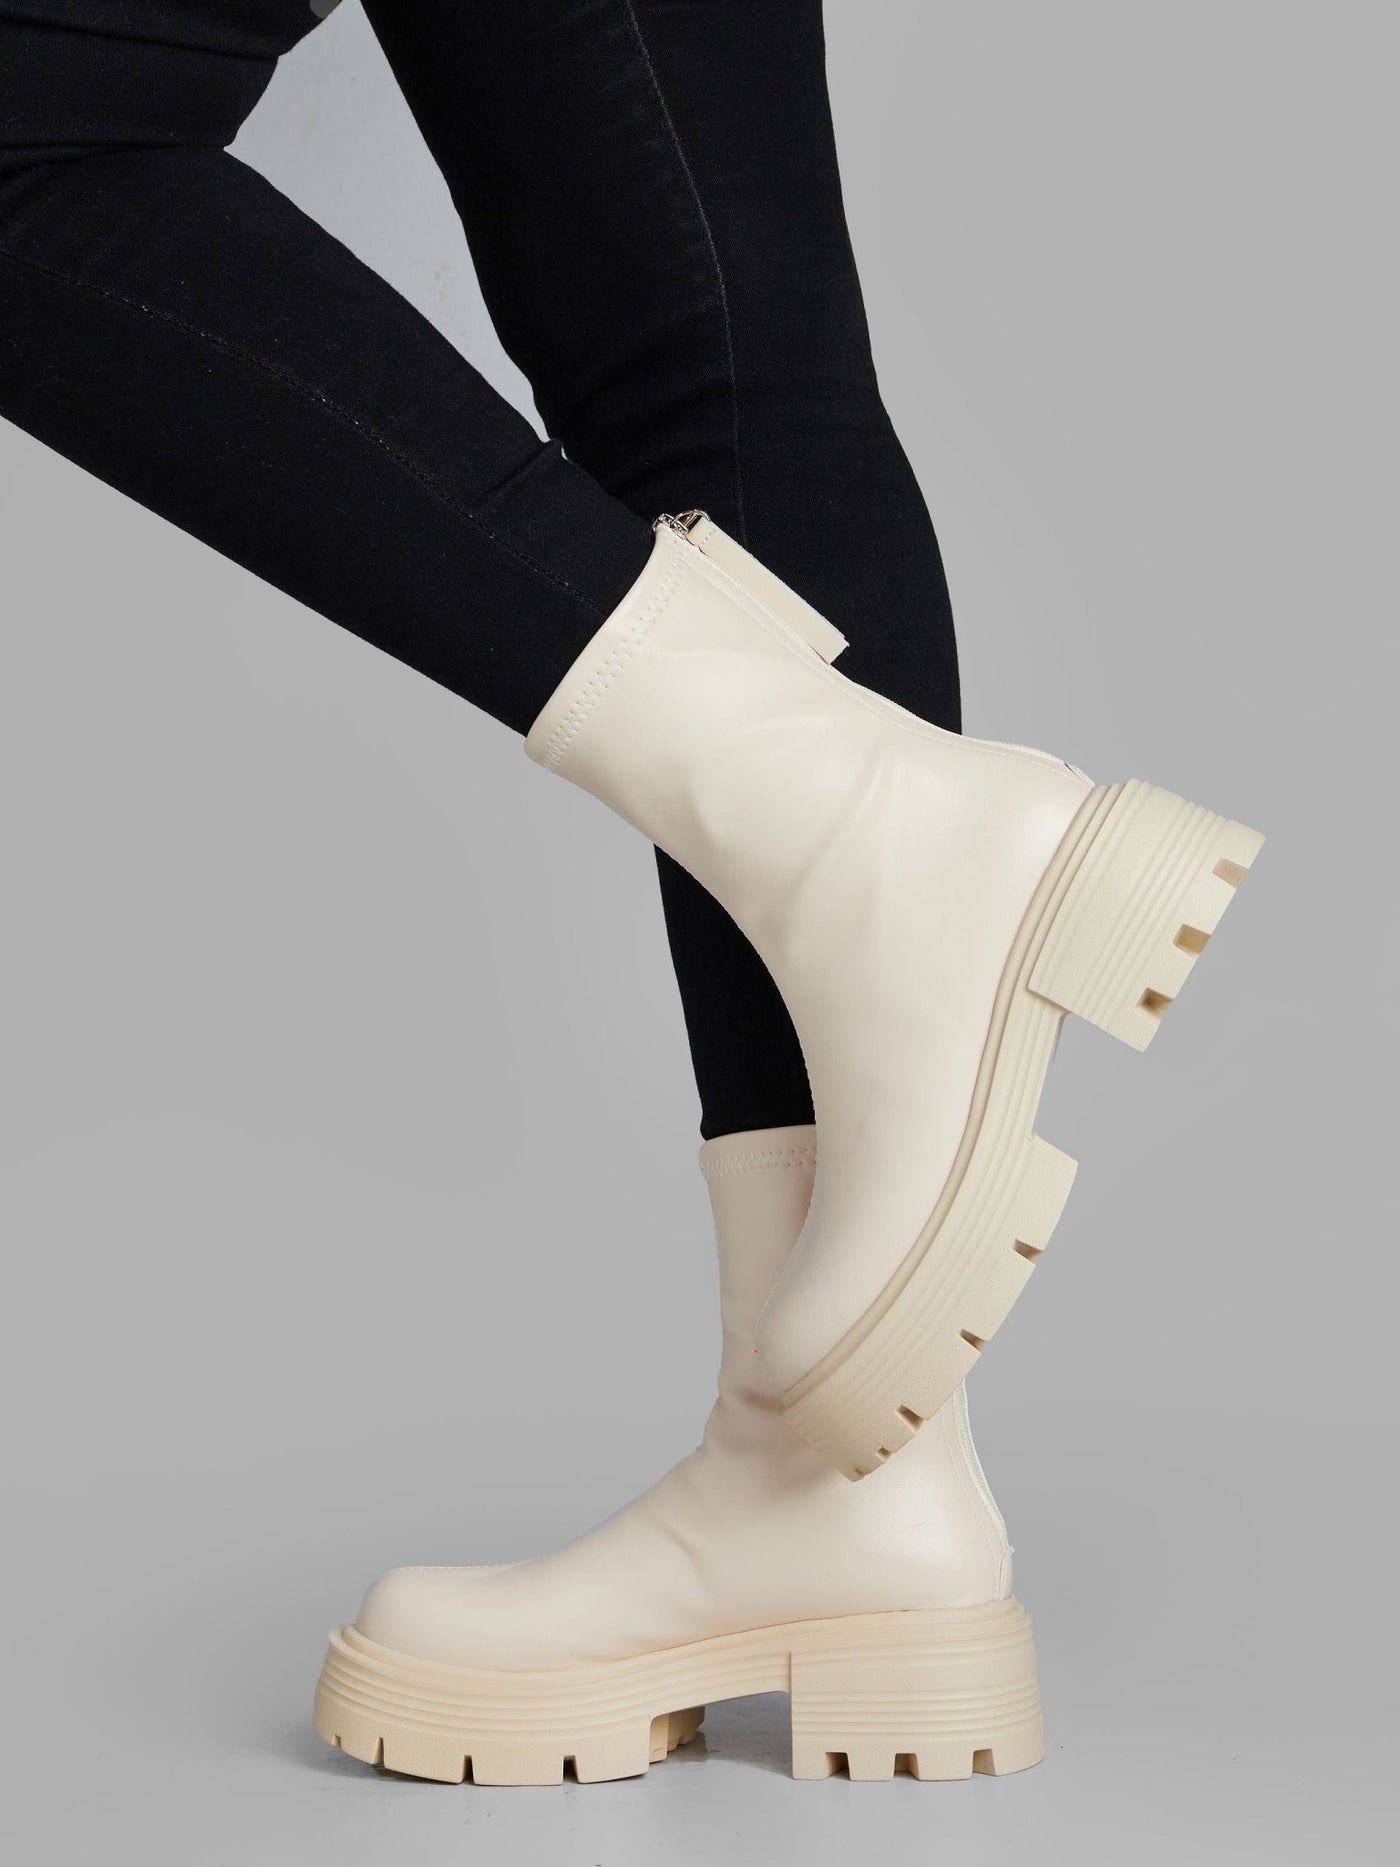 Ziatu Women's Ankle Boots - Cream - Shopzetu